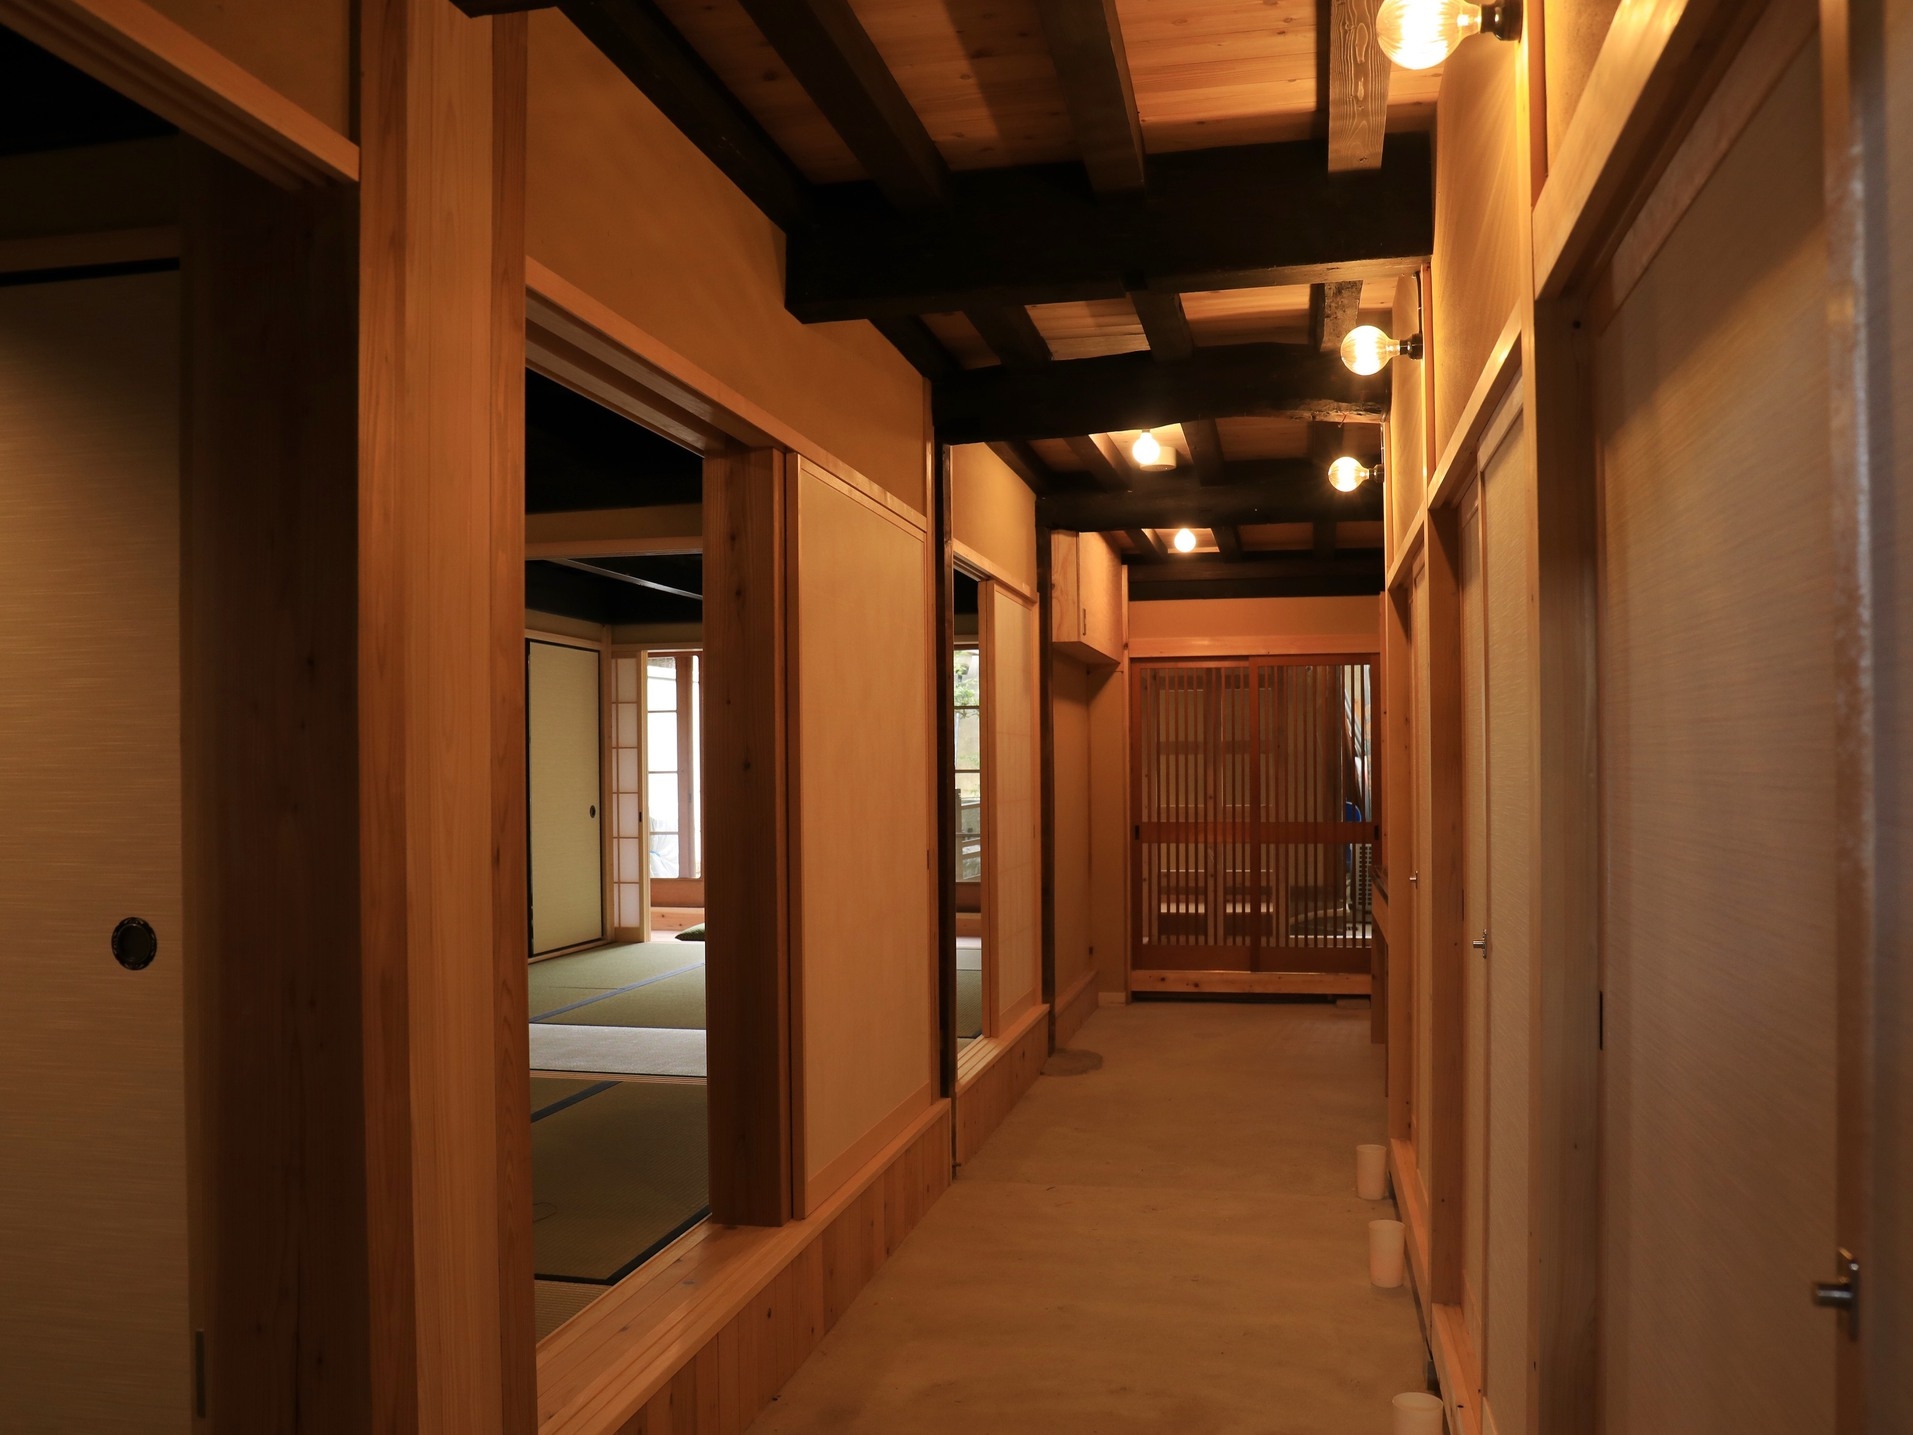 奈良の木・吉野杉の香る歴史的風致形成建造物に宿泊〈一味違う古都の旅♪〉